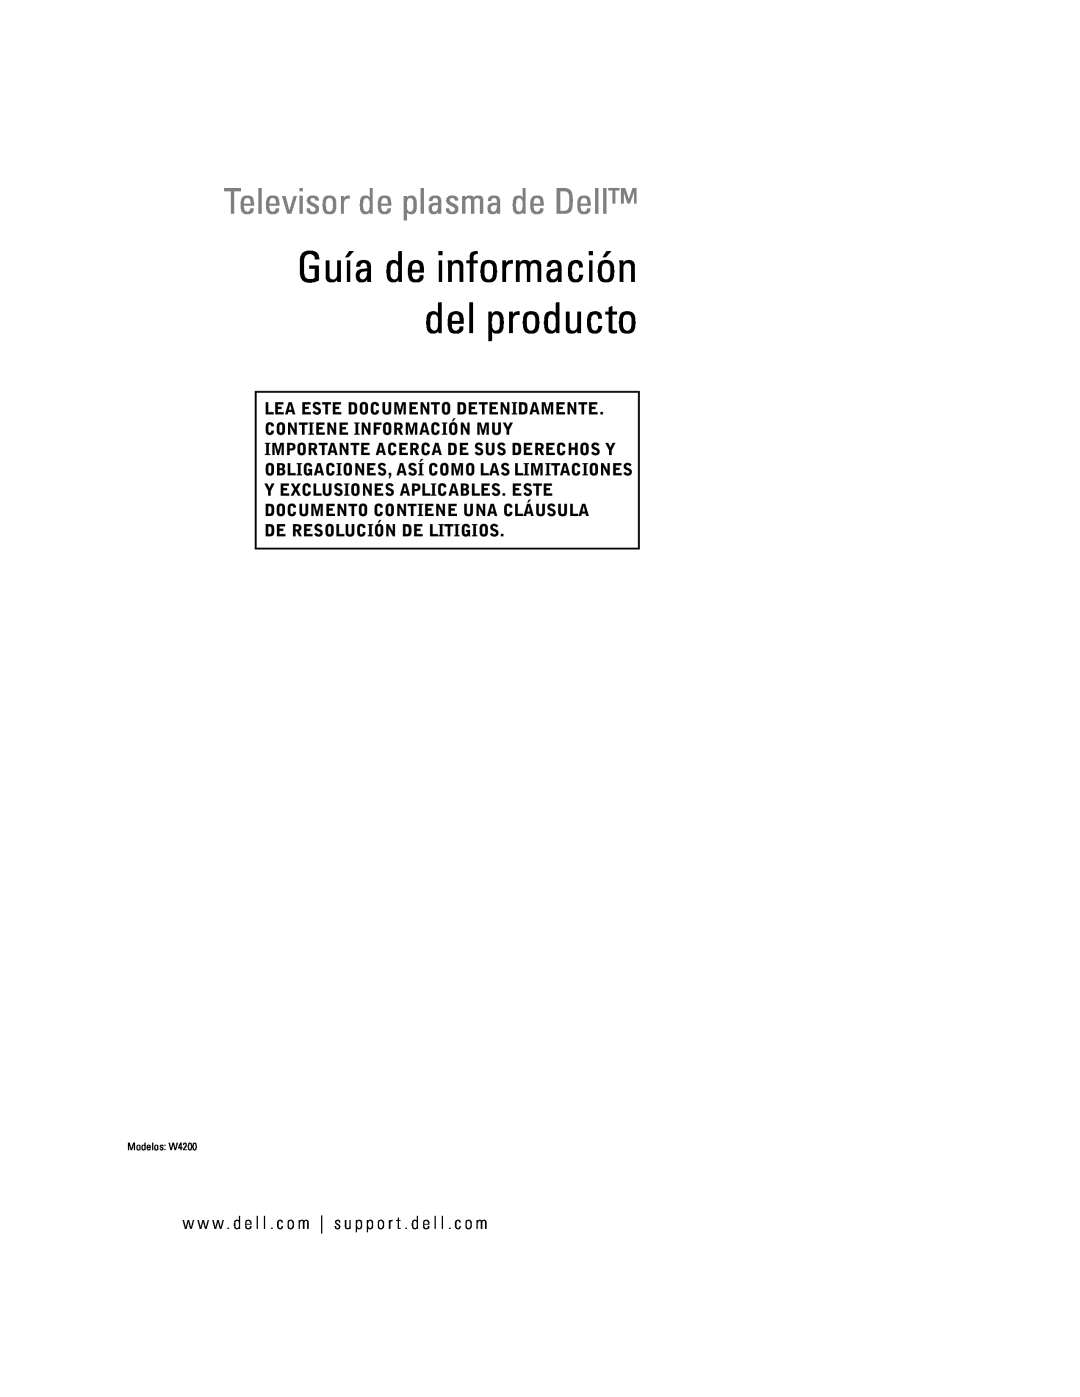 Dell manual Televisor de plasma de Dell, Lea Este Documento Detenidamente Contiene Información Muy, Modelos W4200 